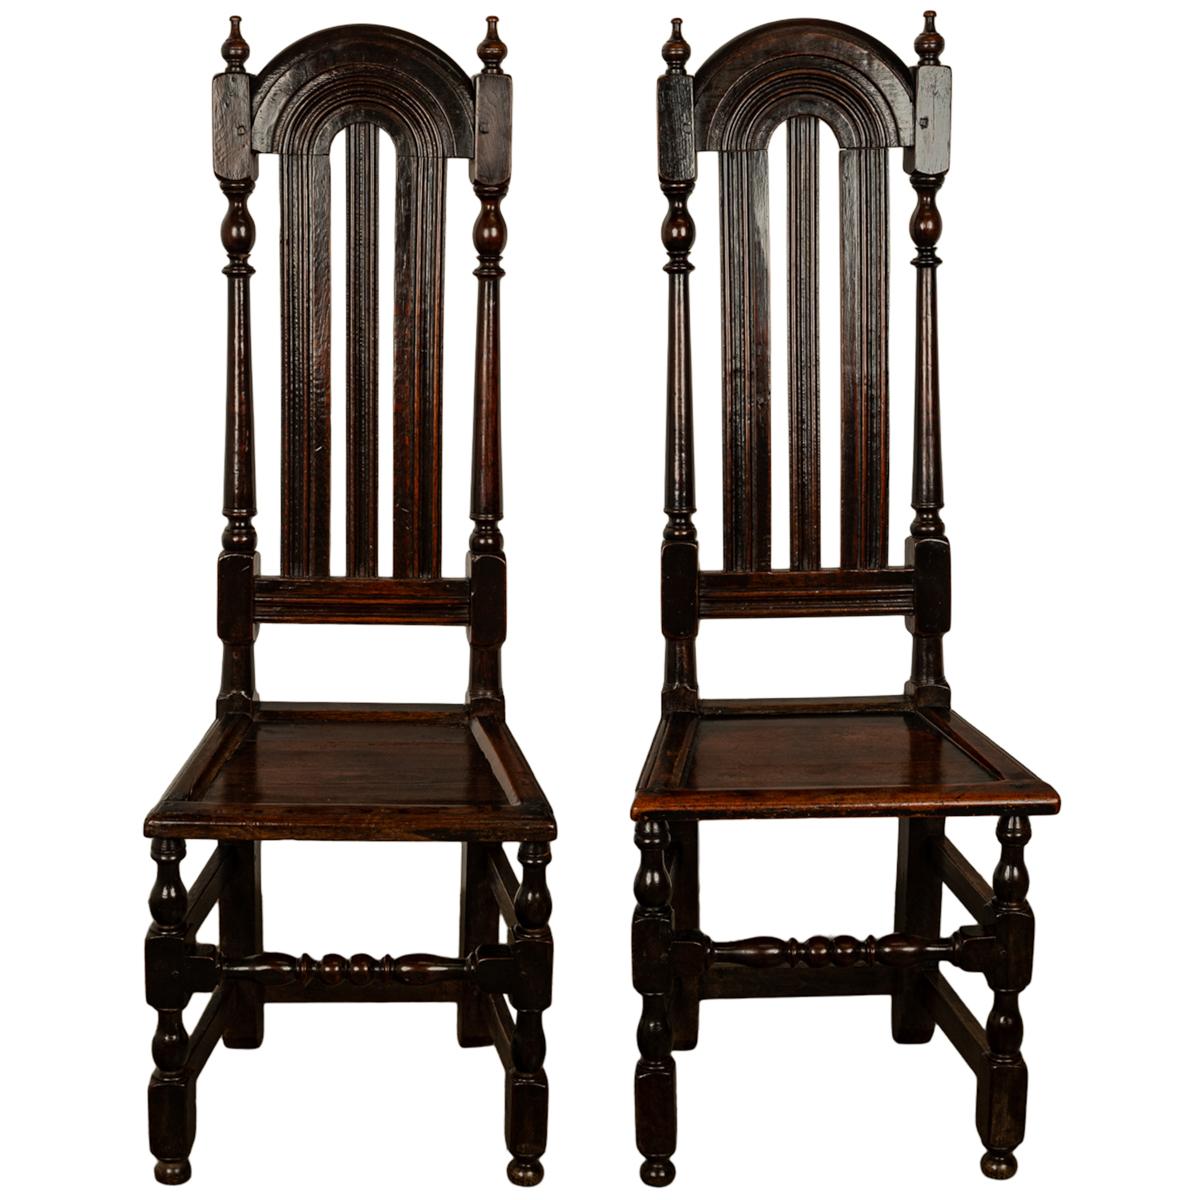 Ein echtes Paar Eichenholzstühle aus dem späten 17. Jahrhundert aus der William & Mary-Periode, um 1690.
Ein seltenes Paar Originalstühle aus den späten 1600er Jahren aus der gemeinsamen Regierungszeit von König Wilhelm III. (Haus Tudor) und Königin